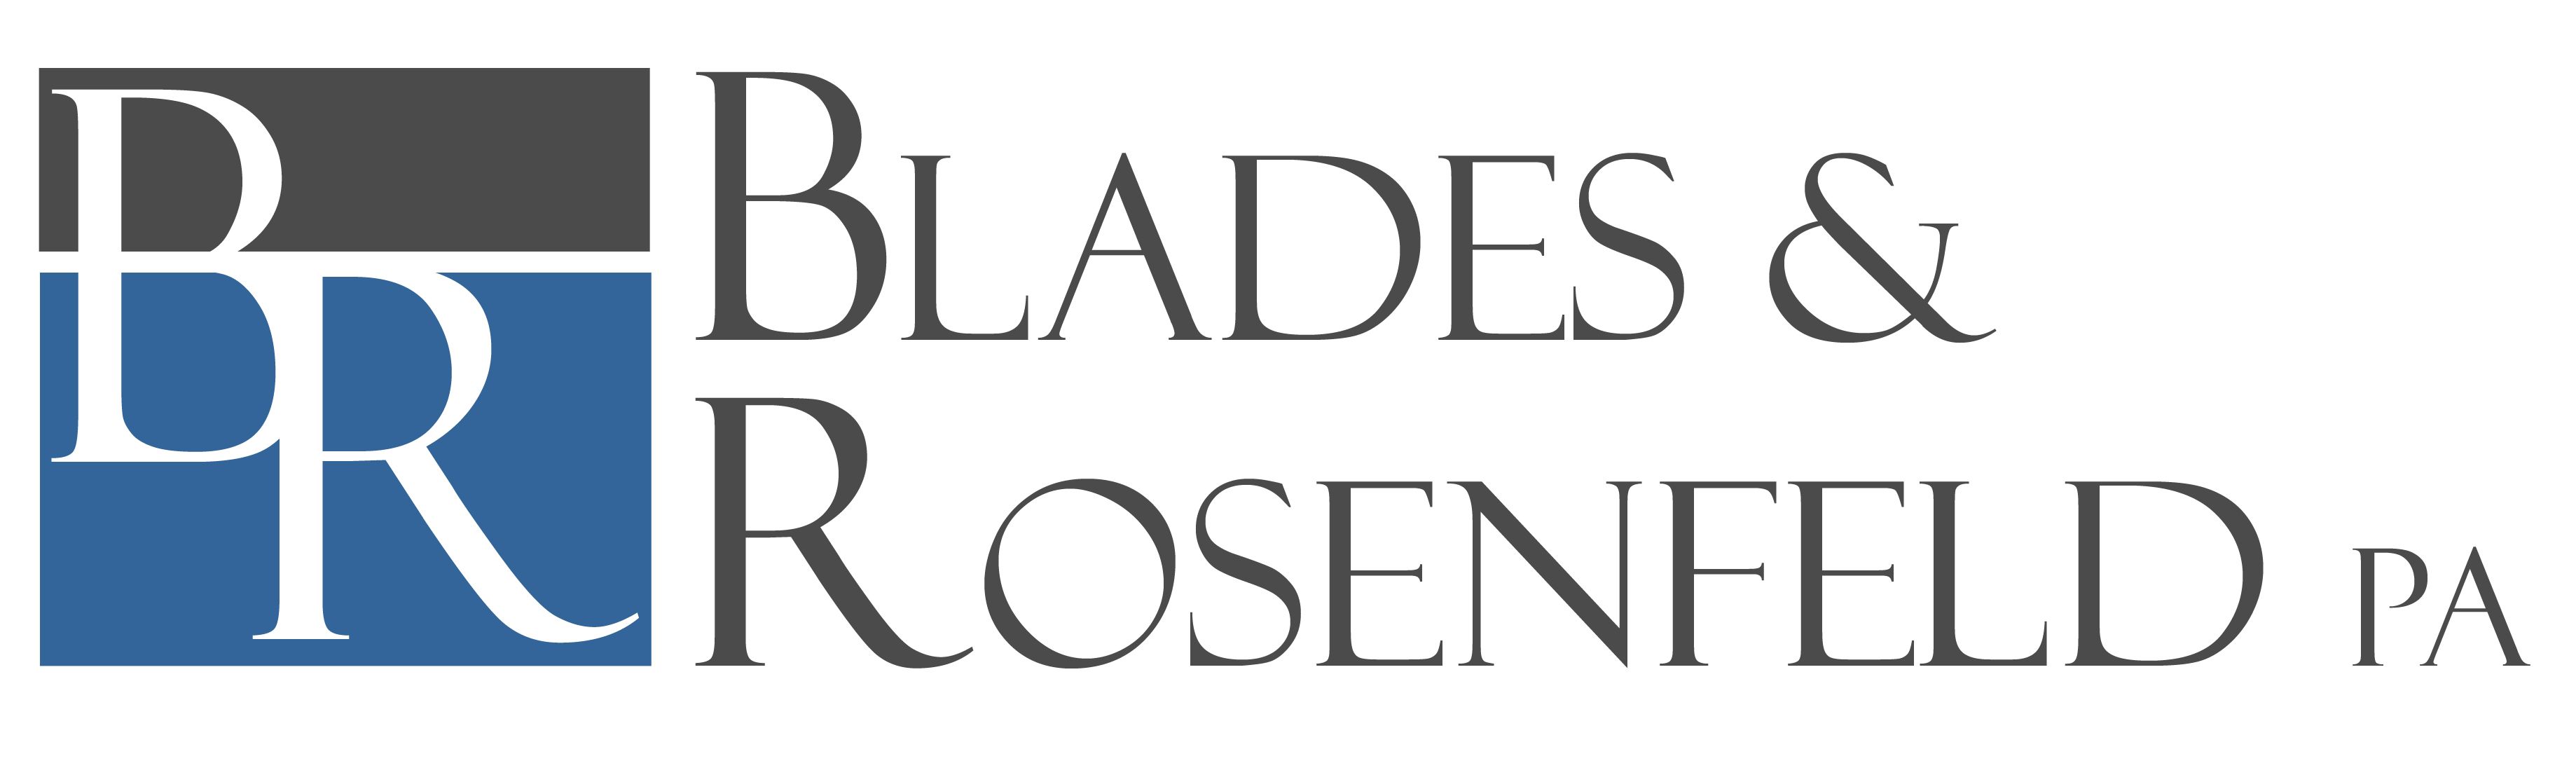 Blades & Rosenfeld